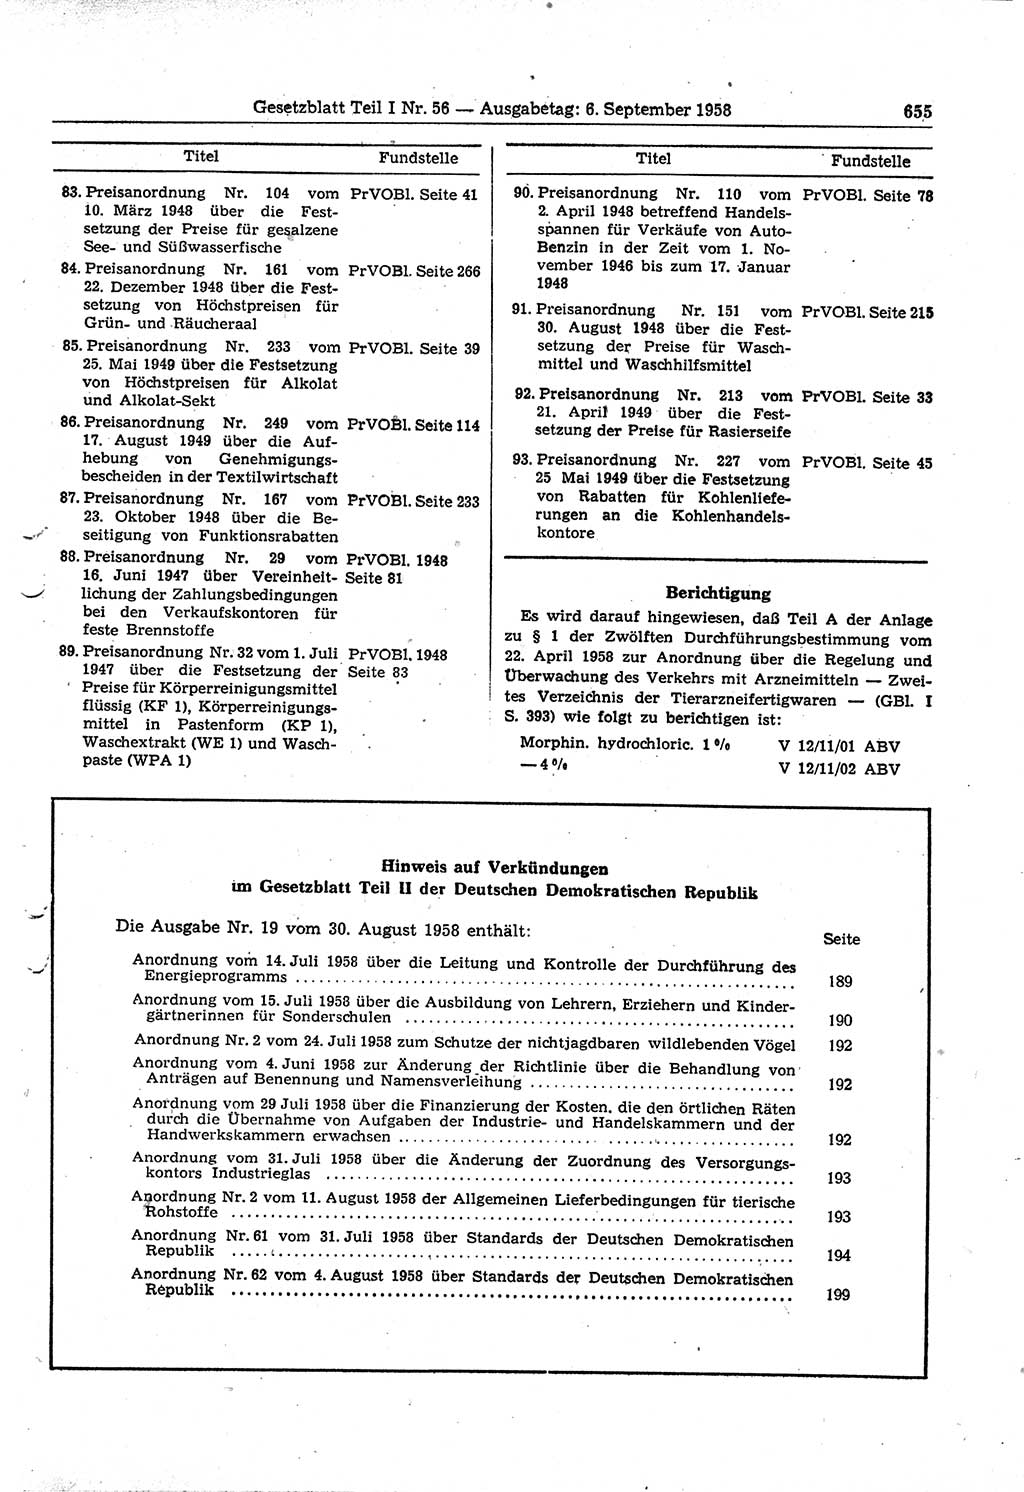 Gesetzblatt (GBl.) der Deutschen Demokratischen Republik (DDR) Teil Ⅰ 1958, Seite 655 (GBl. DDR Ⅰ 1958, S. 655)